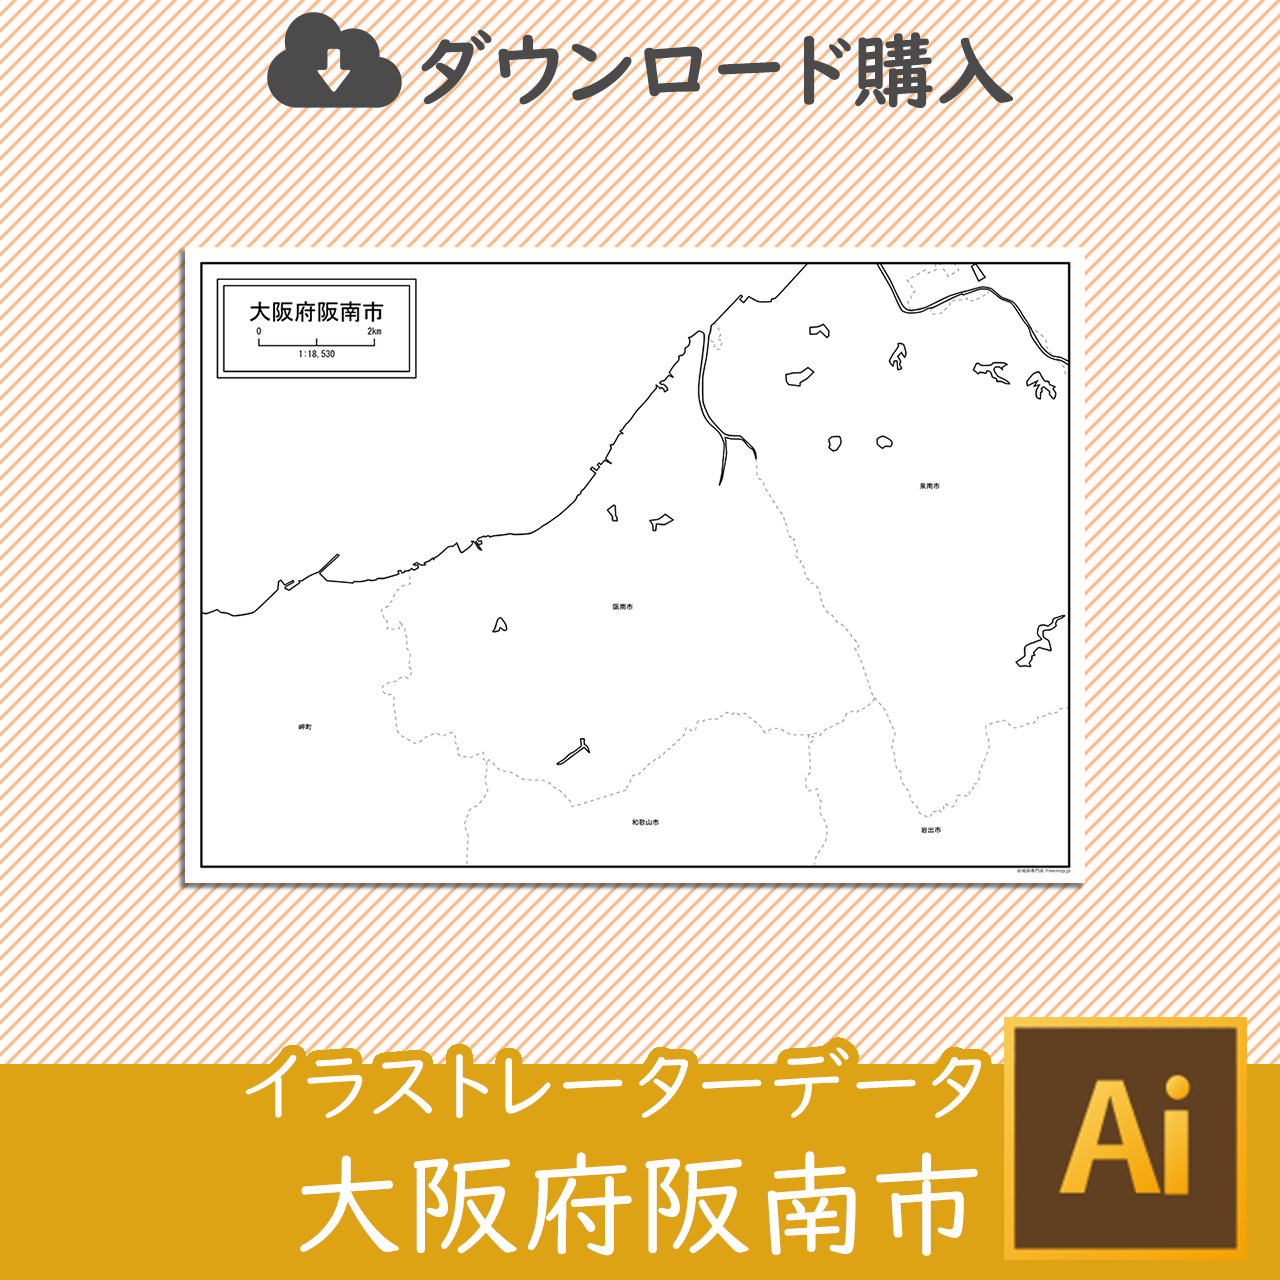 阪南市のaiデータのサムネイル画像